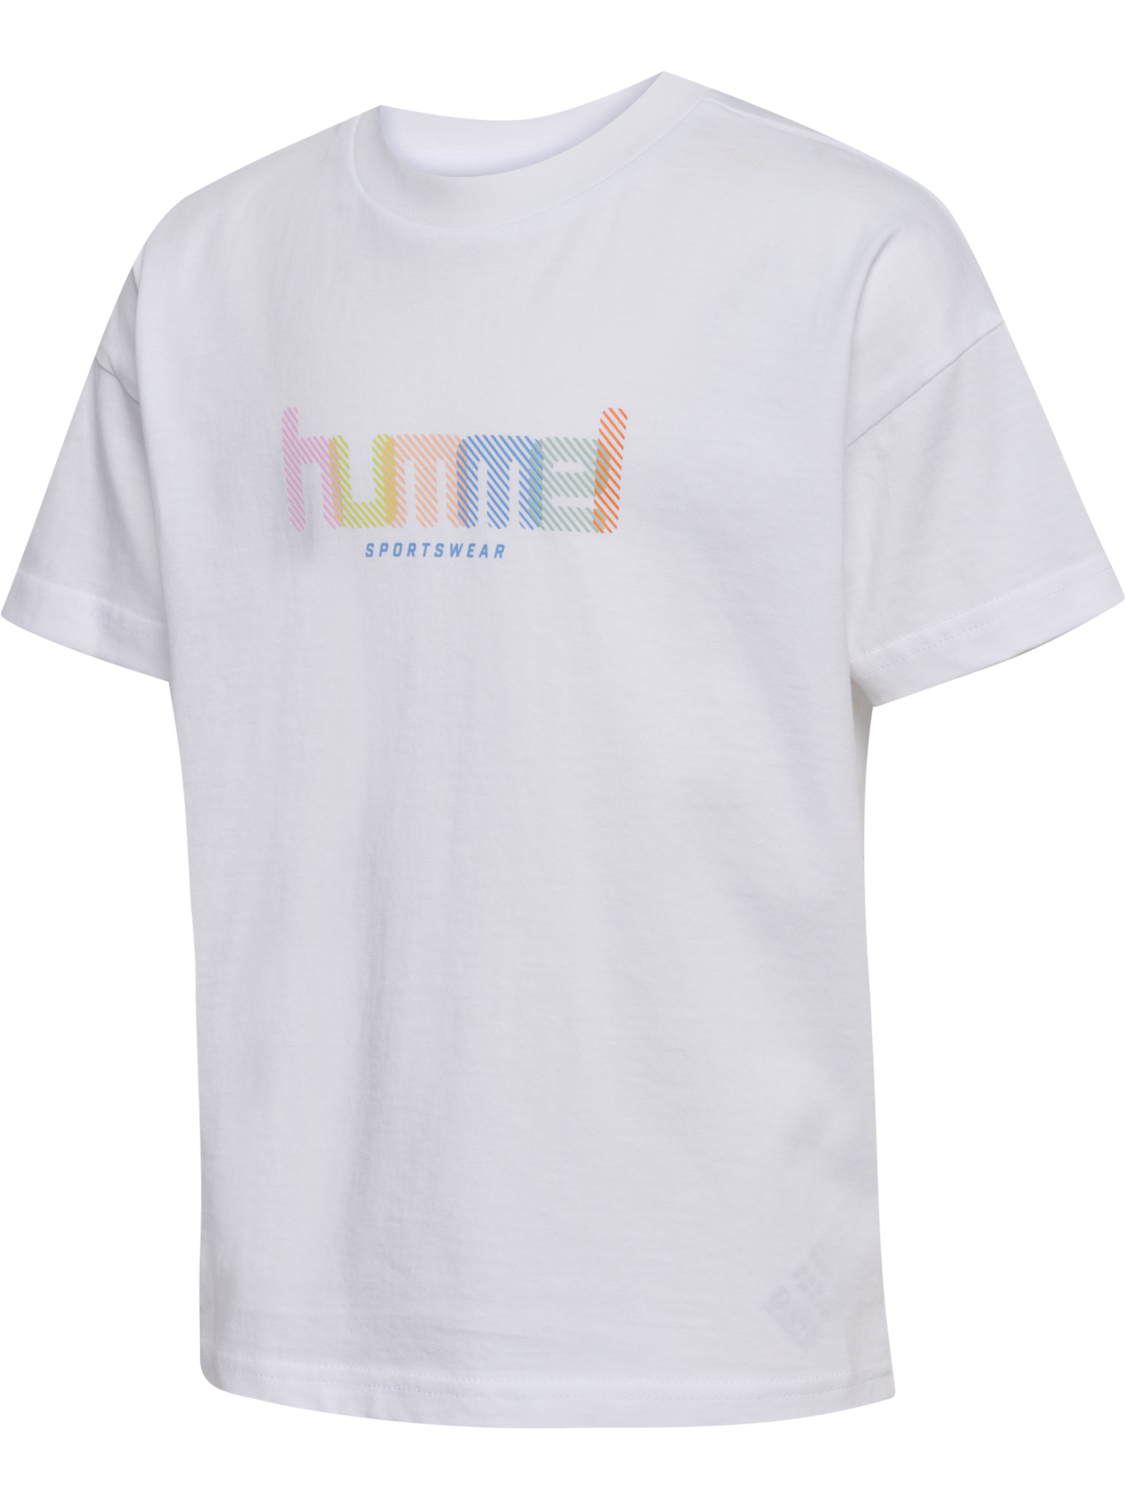 Hummel Agnes t-shirt JR white